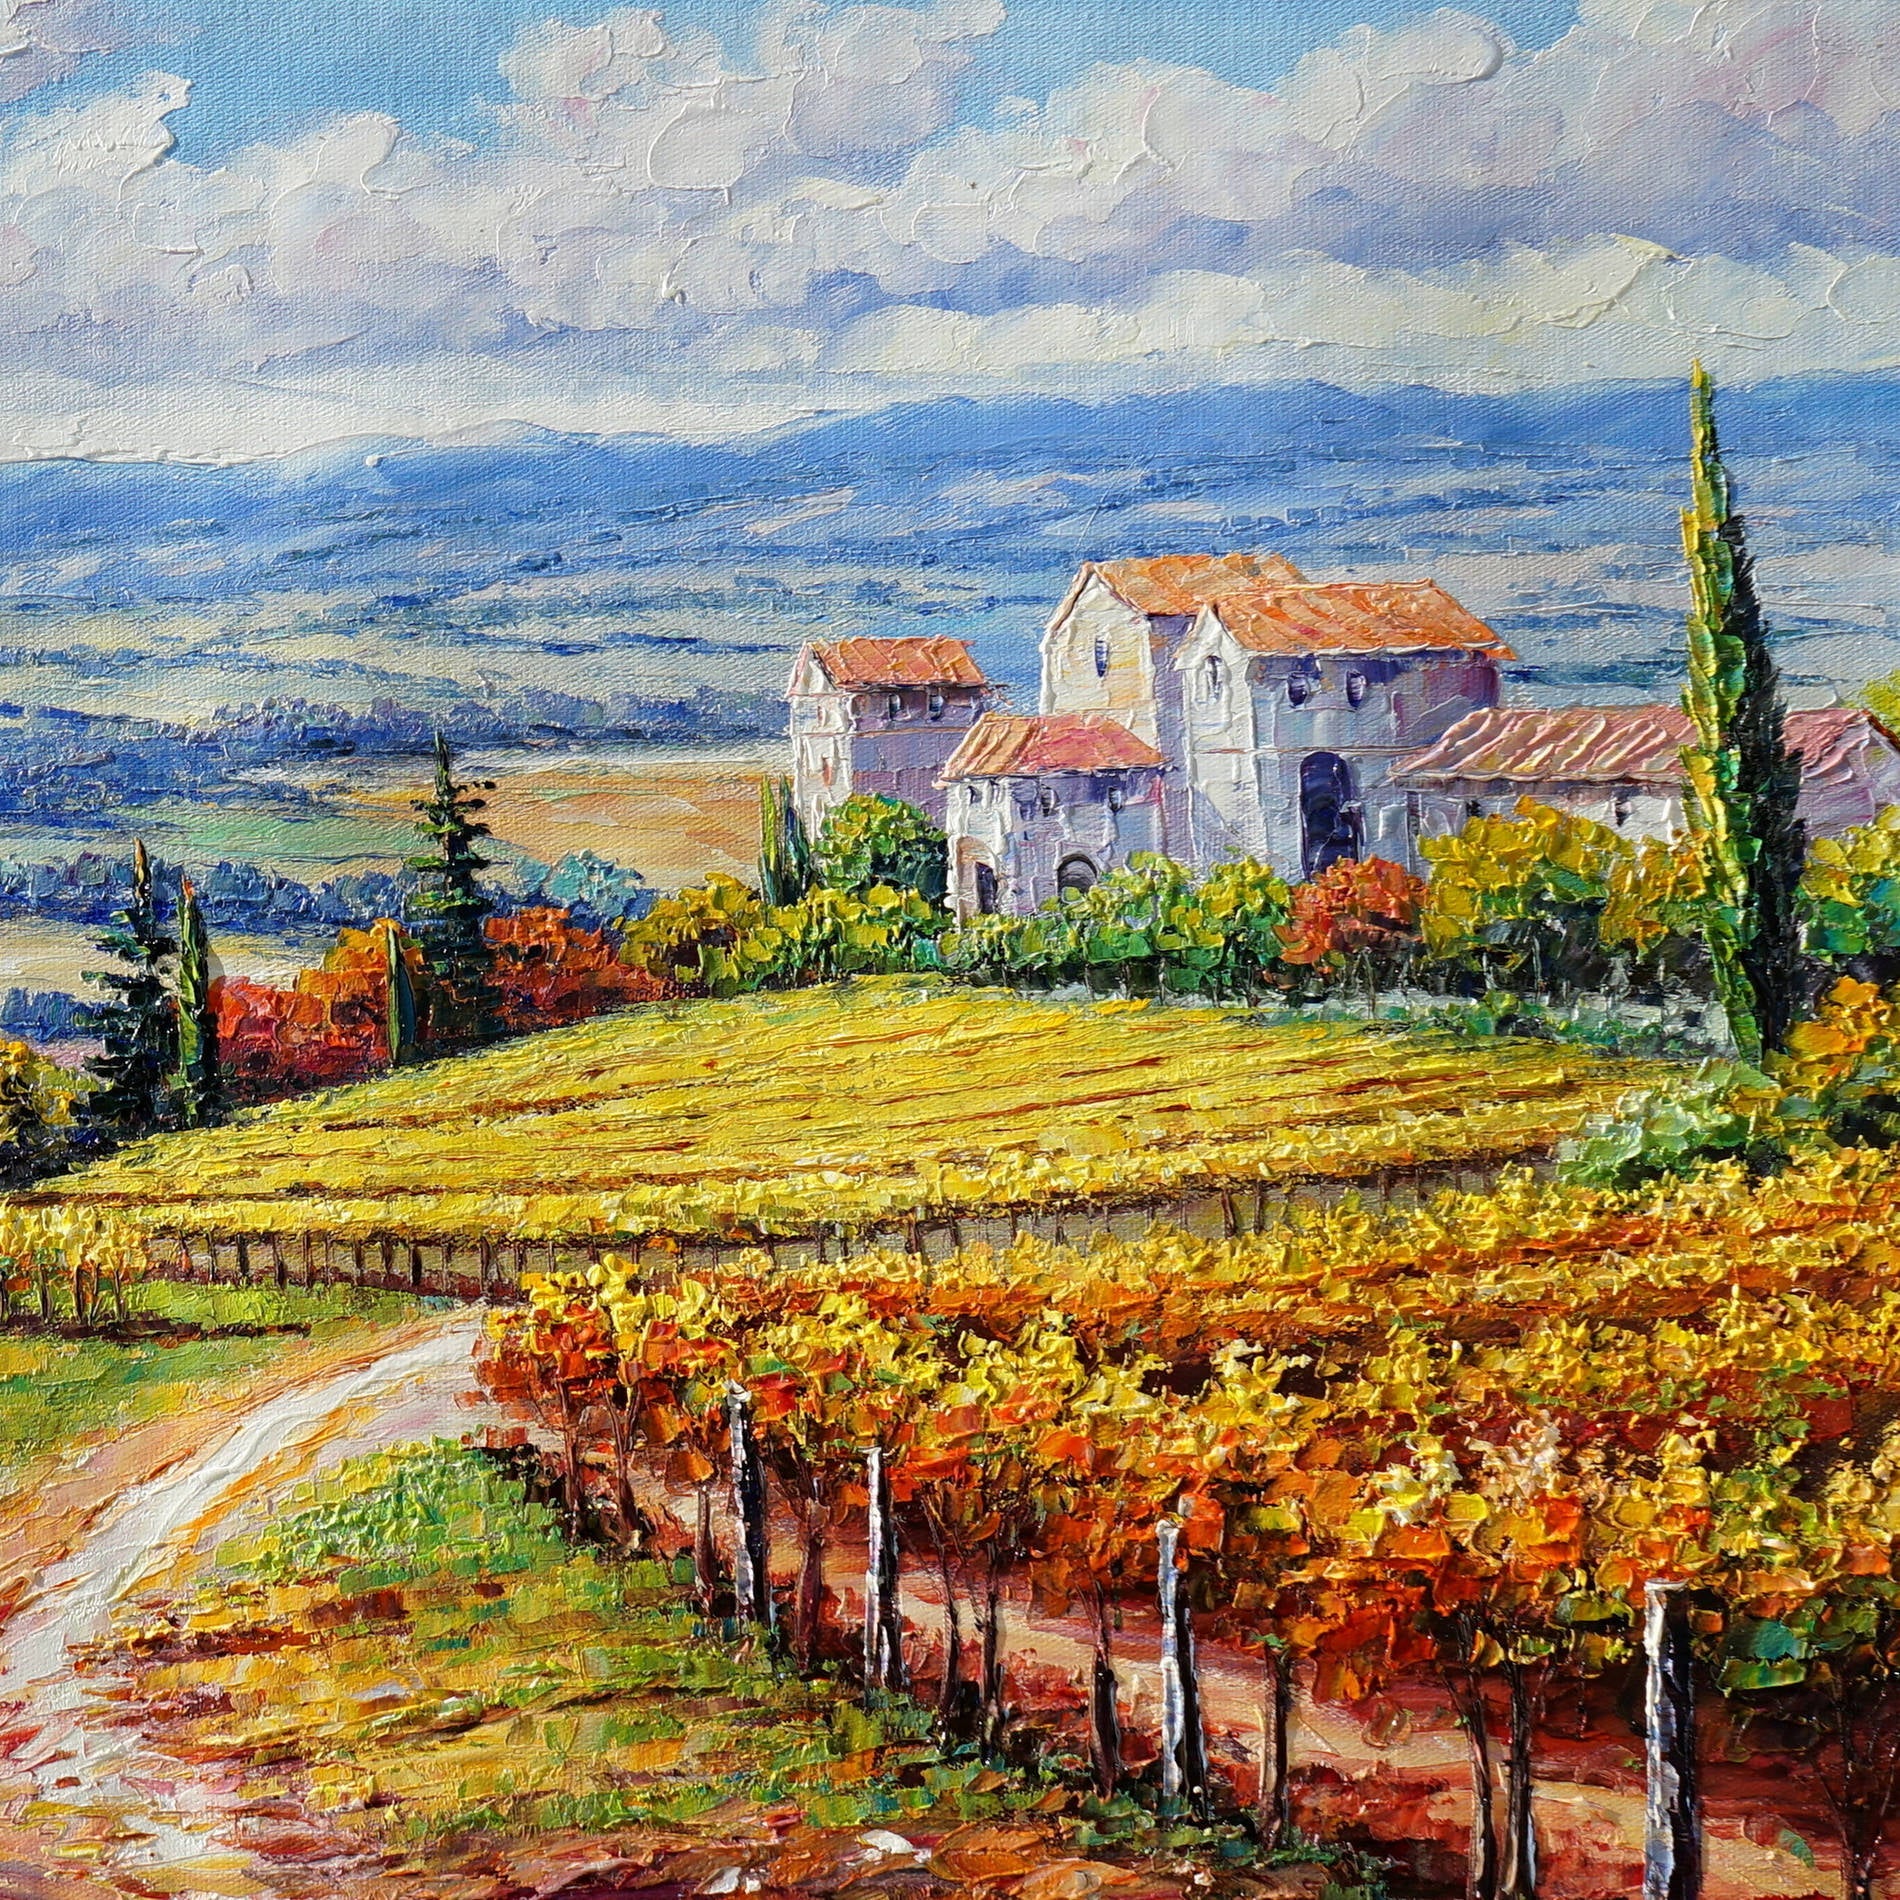 Dipinto paesaggio toscano con casa colonica e vigne